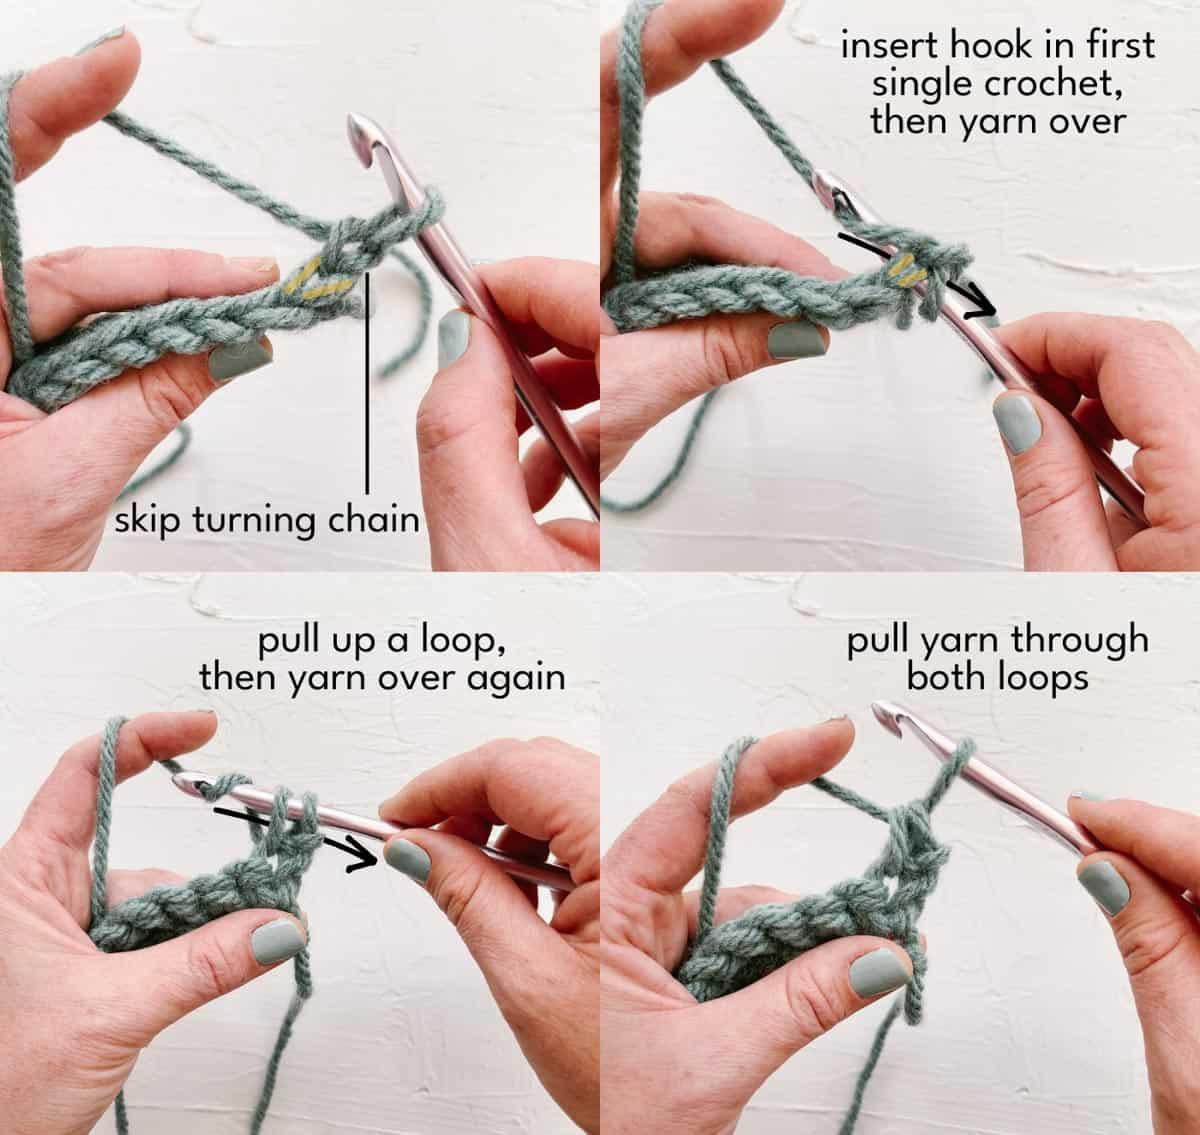 Steps of the single crochet stitch.